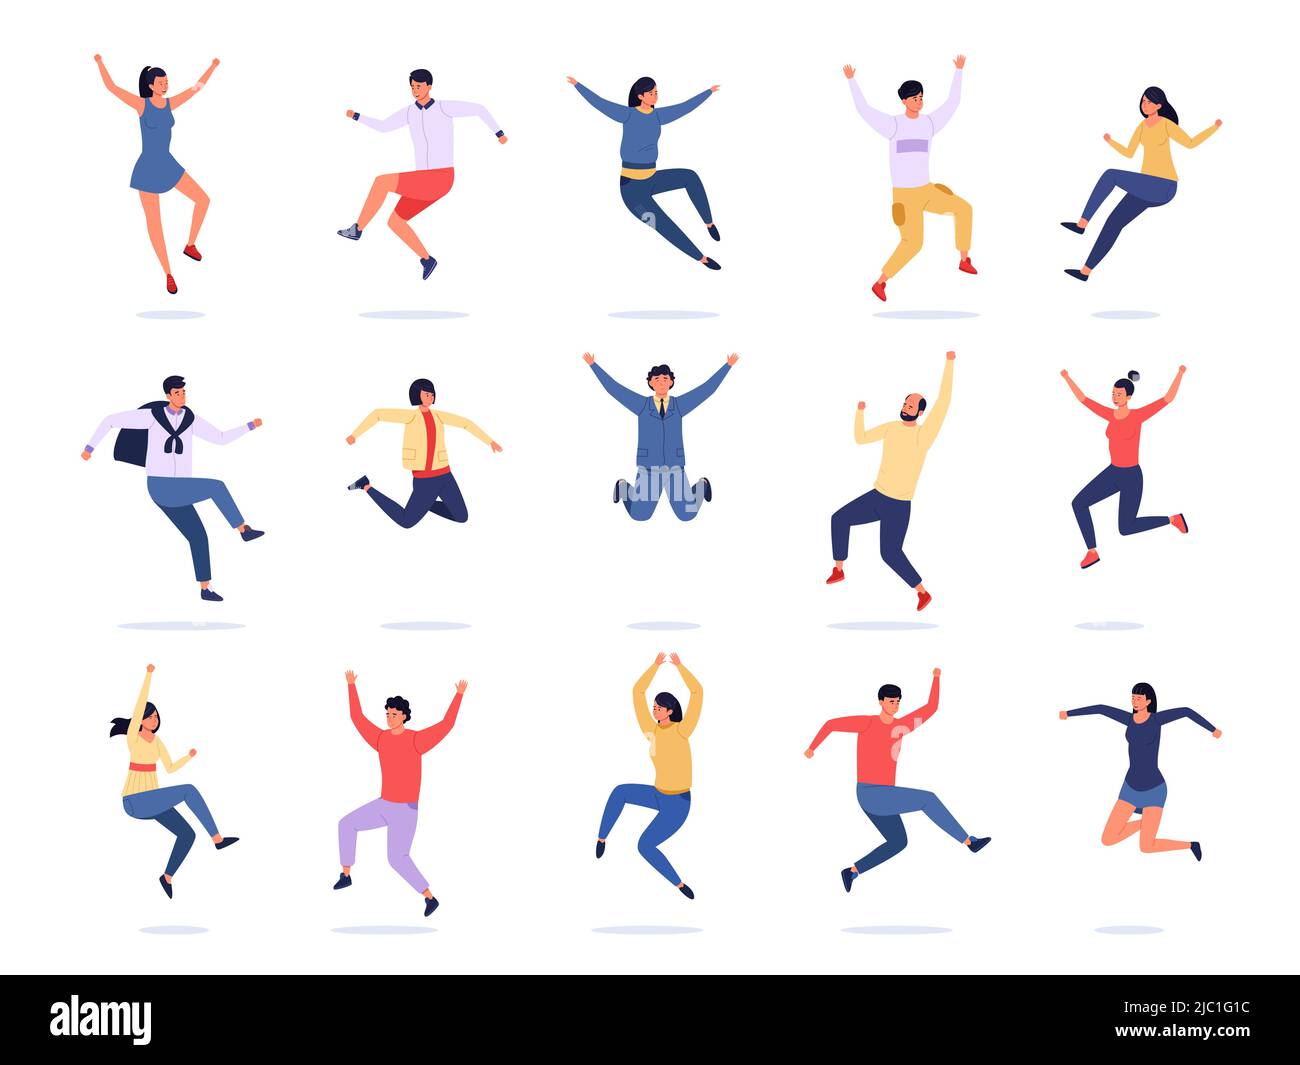 Springende Menschen. Fröhliche junge Charaktere bringen Emotionen zum Ausdruck, Teenager-Gruppe in farbenfrohen trendigen Kleidern. Vektor freudig fliegende Personen in Bewegung, männlich und Stock Vektor